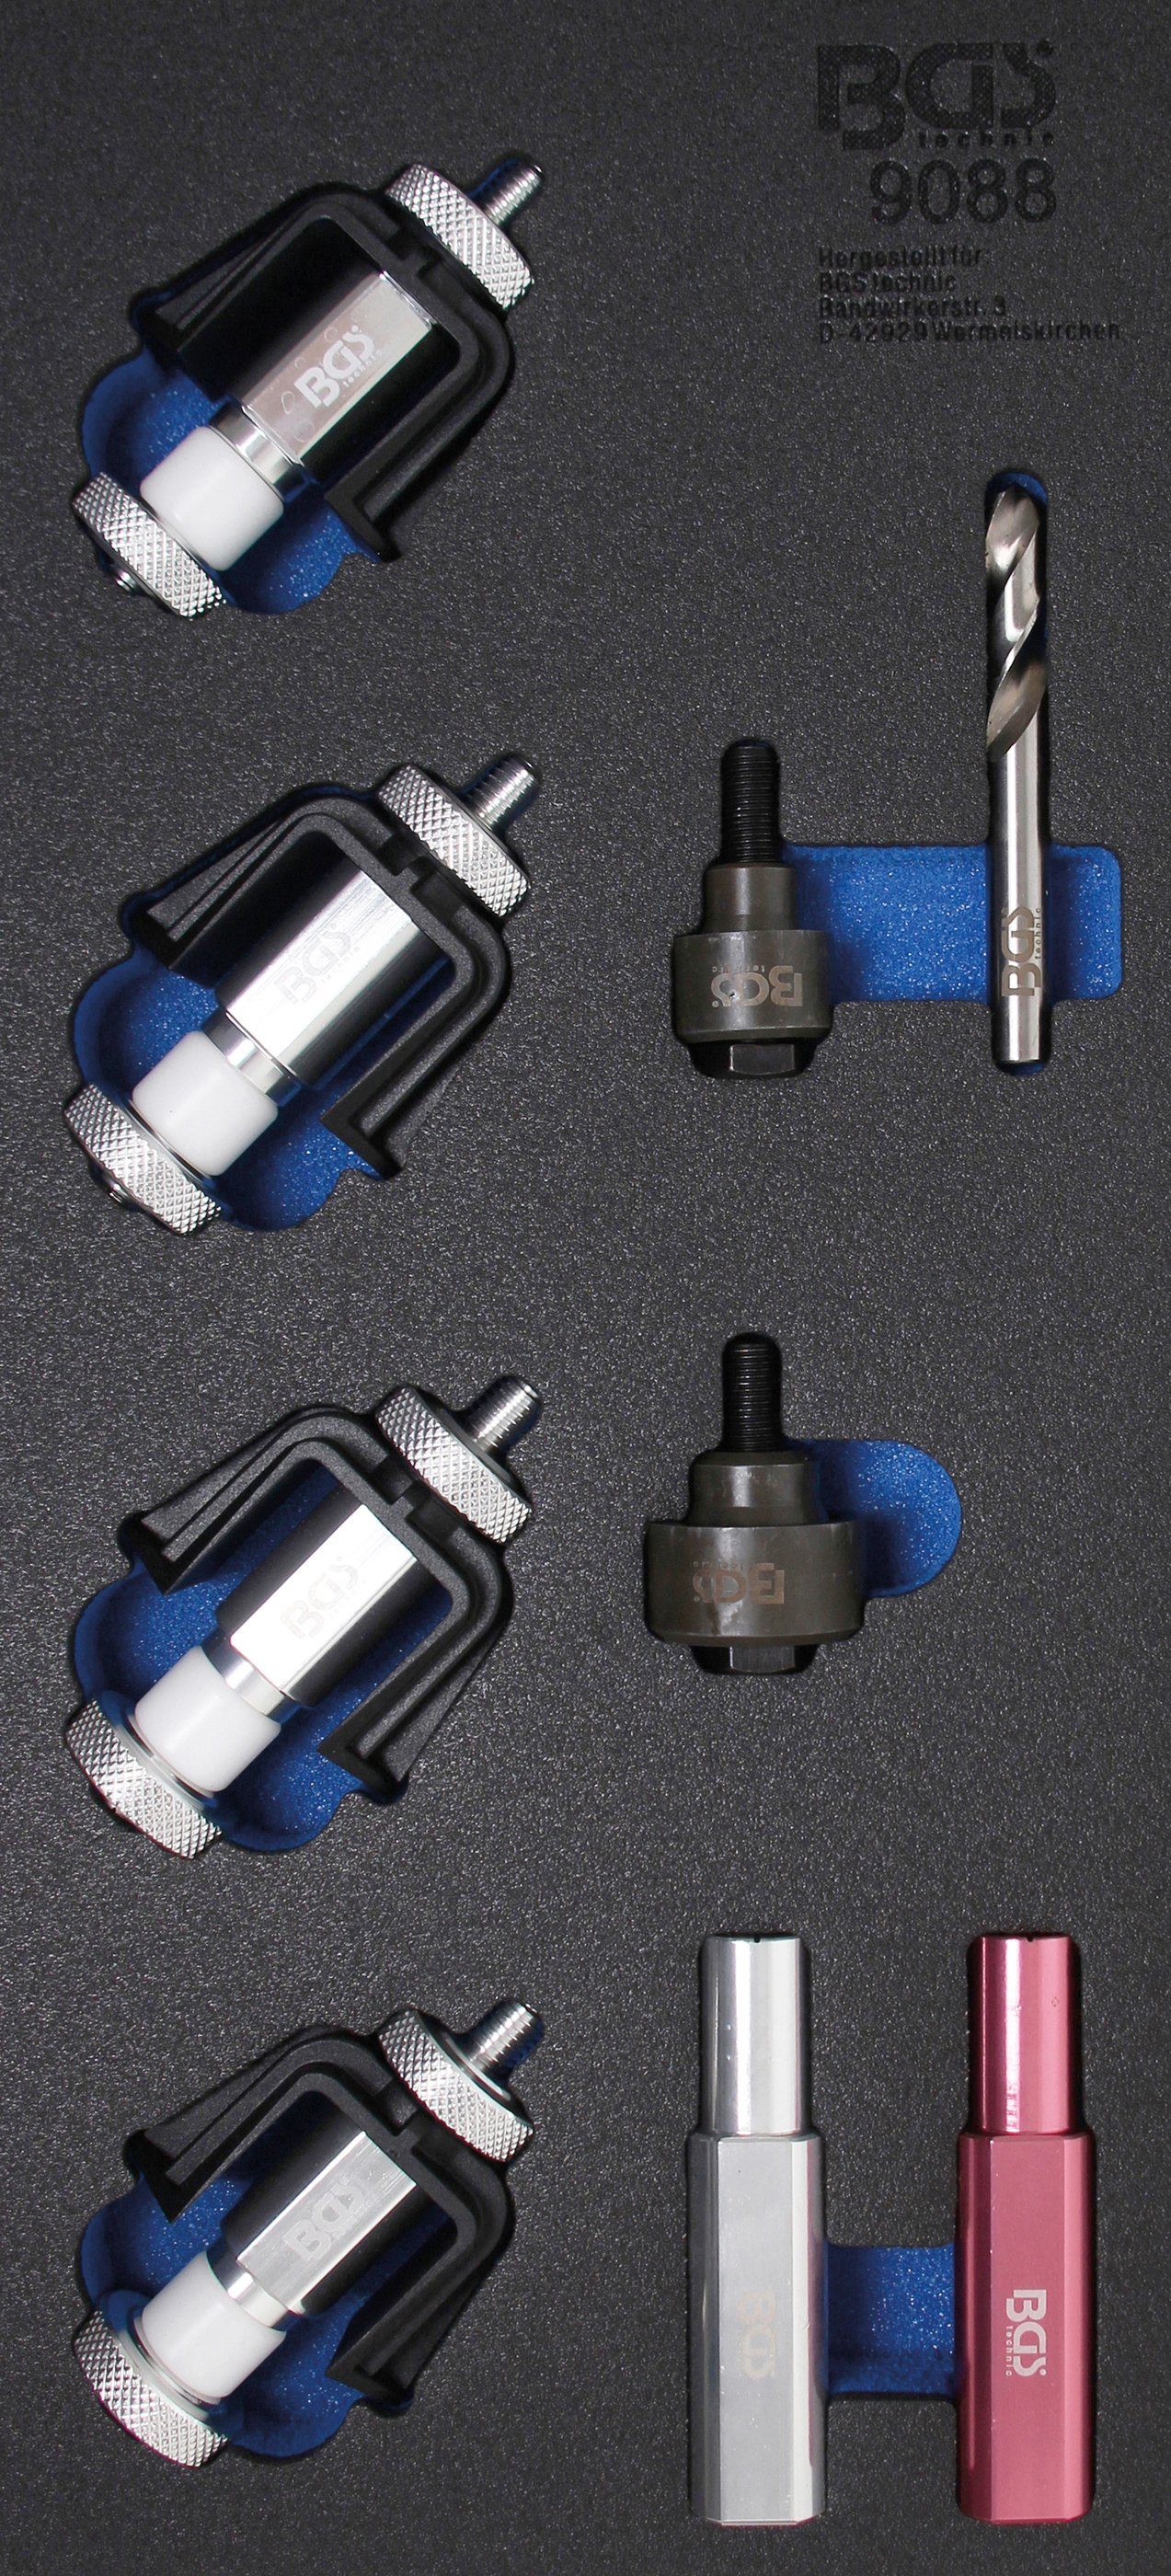 BGS Werkzeugset Montagewerkzeug-Satz für Einparksensoren-Halter, Werkstattwageneinlage 1/3, 150 mm Backen | Werkzeug-Sets